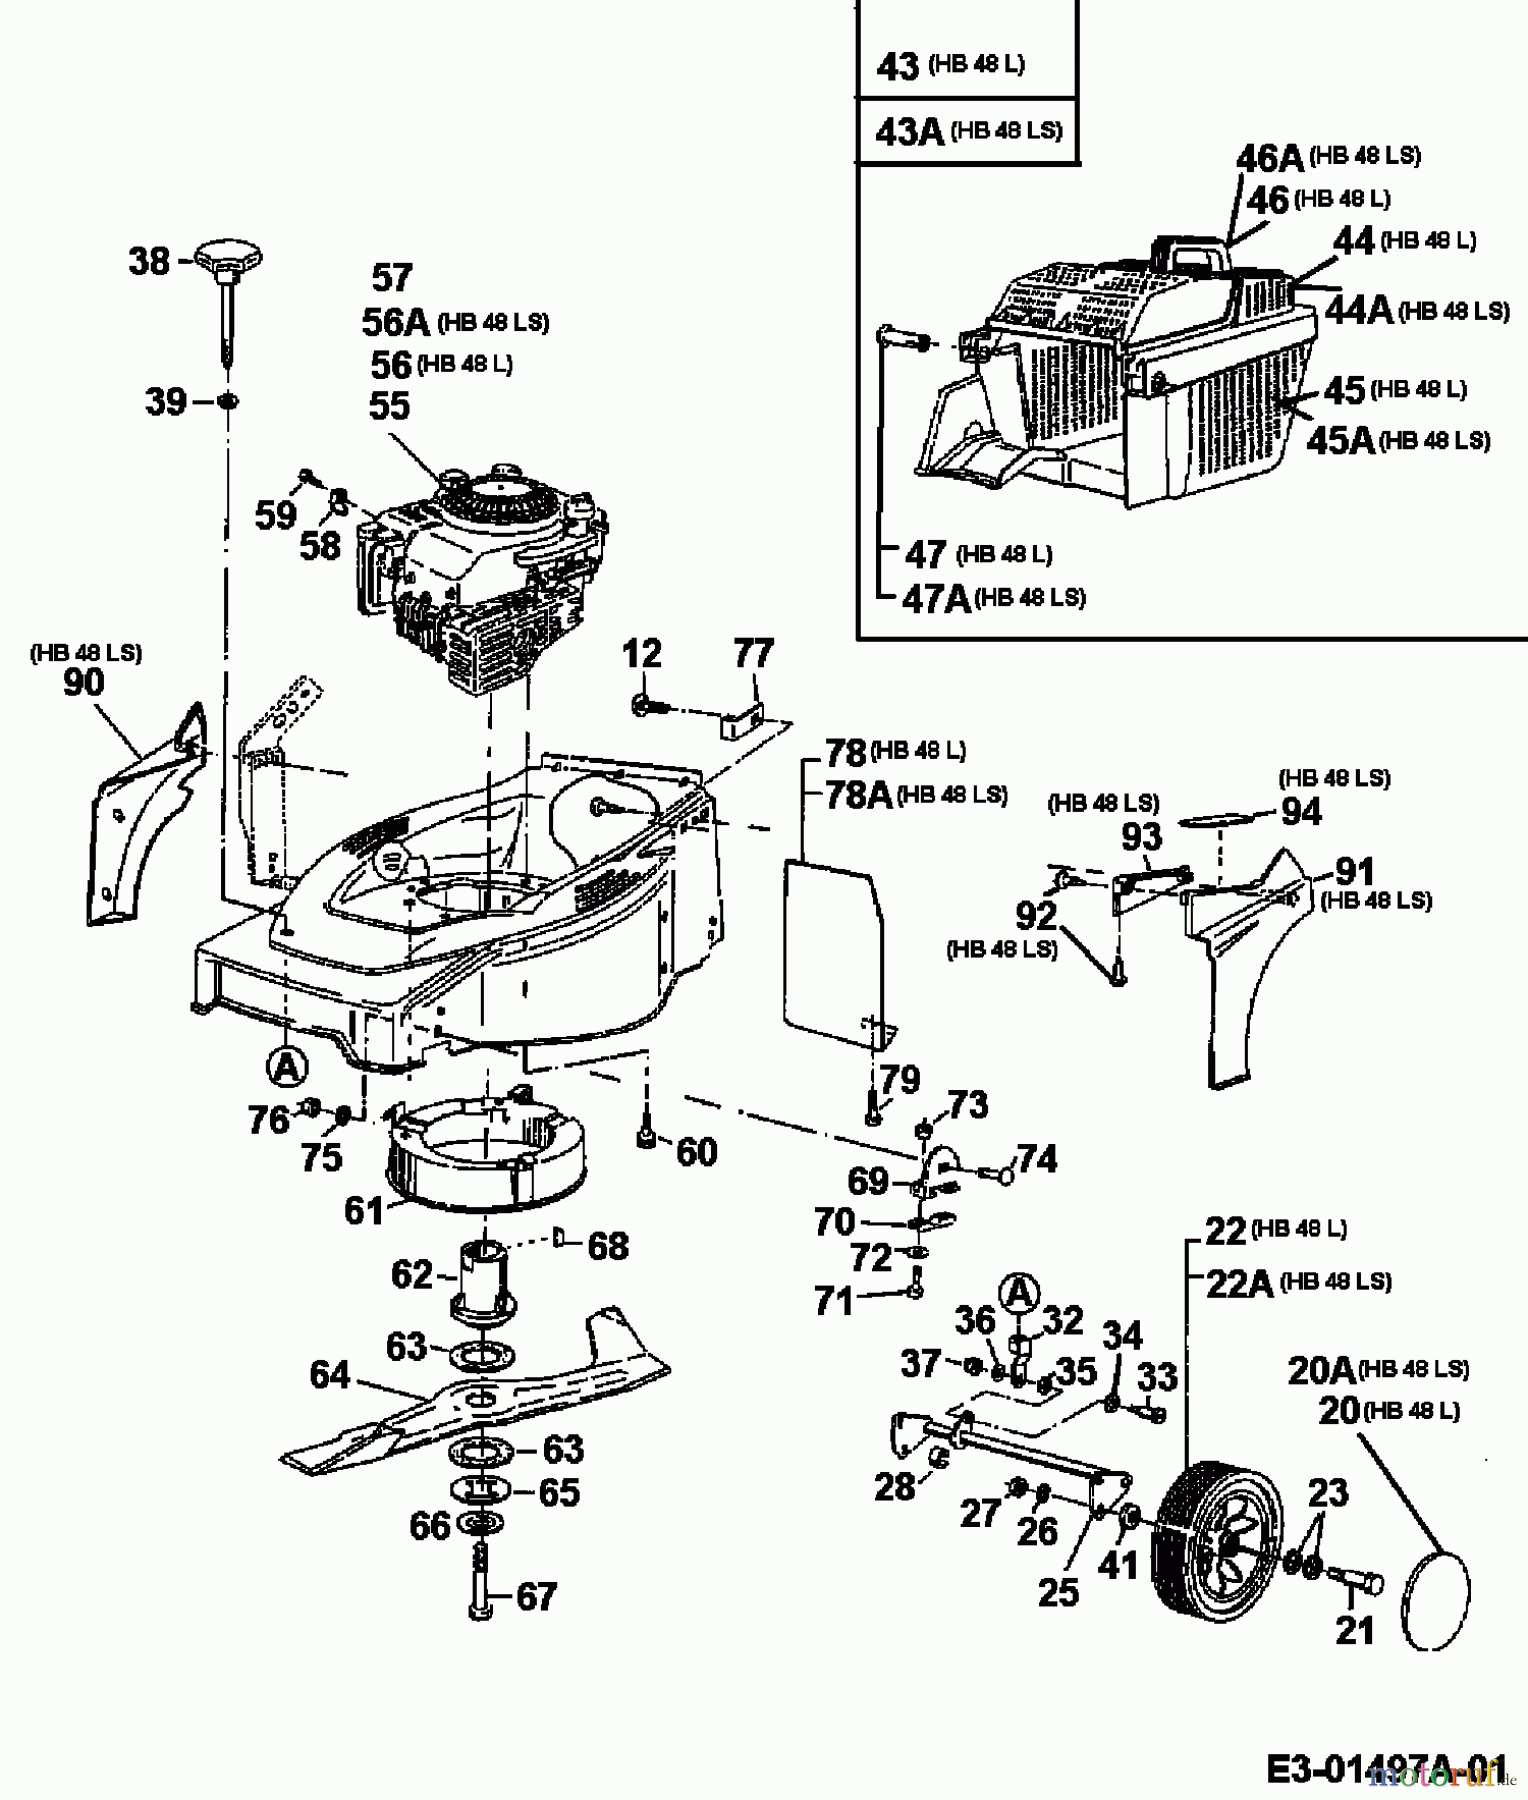  Gutbrod Tondeuse thermique HB 48 L 11B-T58V604  (2000) Machine de base